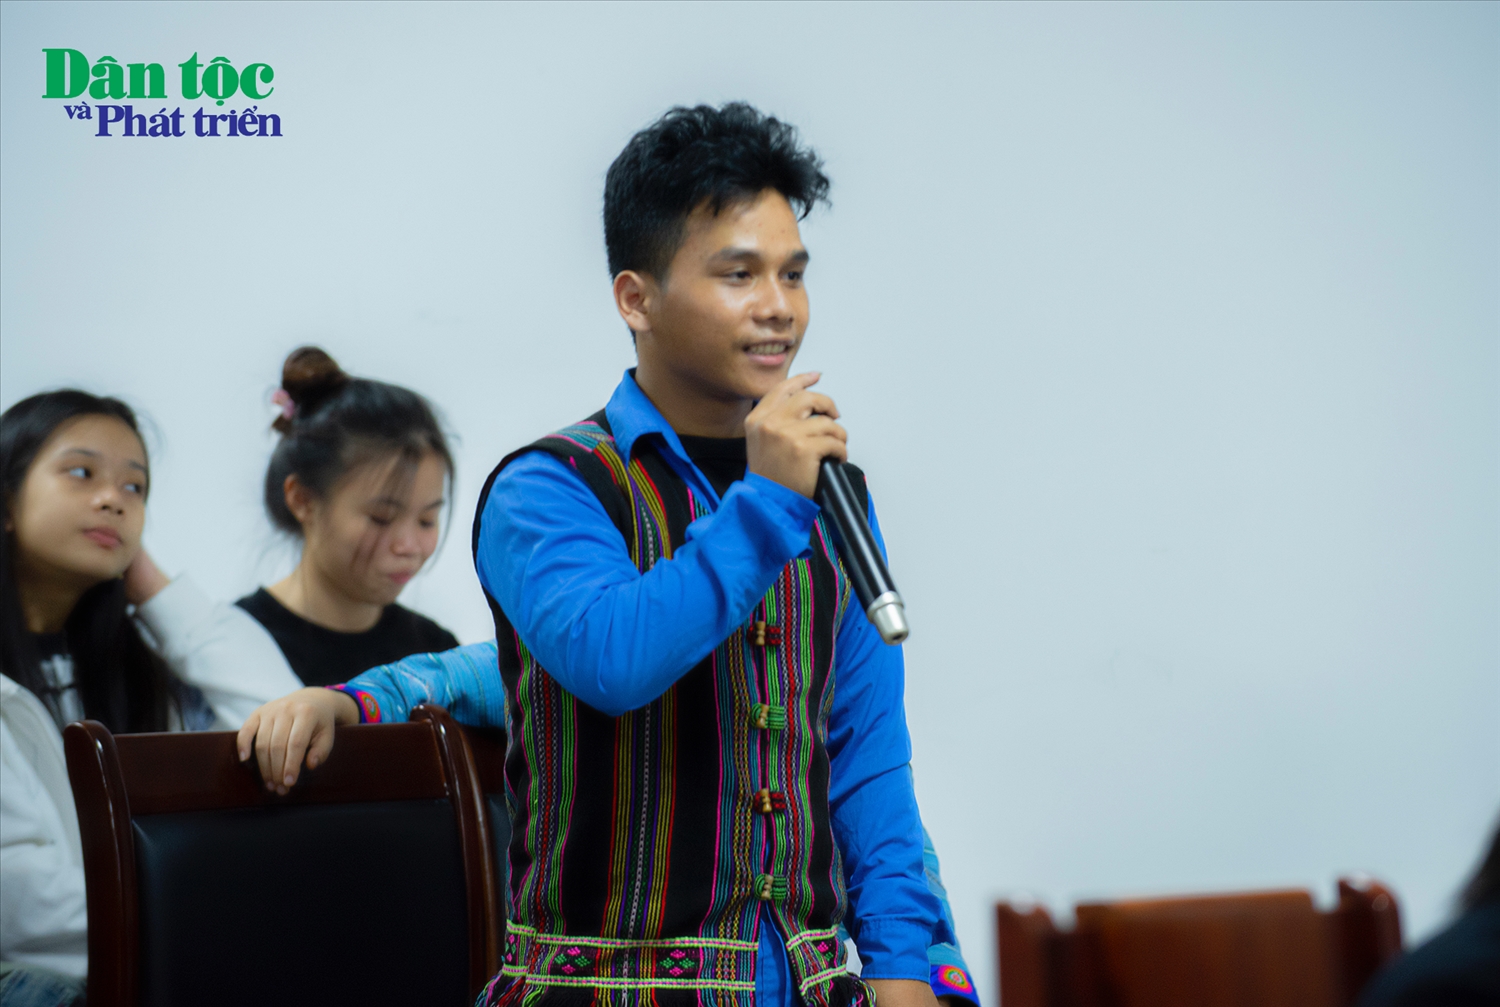 Tại sự kiện, sinh viên Hồ Văn Đôi (Dân tộc Tà Ôi) đã có bài phát biểu về ý tưởng tổ chức Câu lạc bộ Sinh viên Học viện Dân tộc, góp phần gắn kết, học hỏi lẫn nhau giữa các bạn sinh viên toàn trường